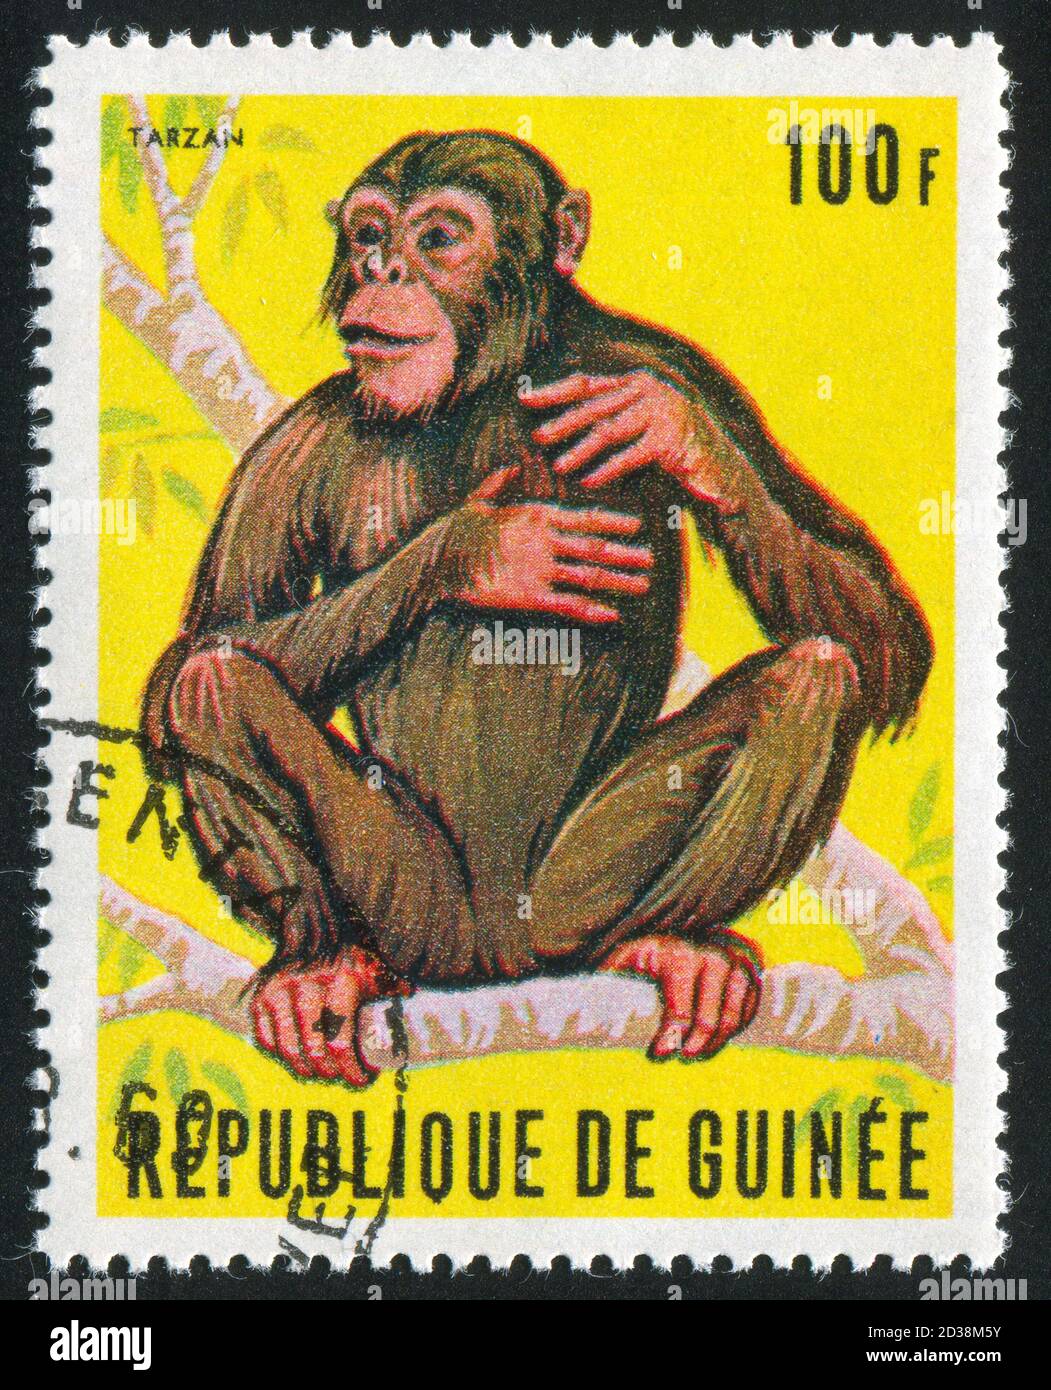 GUINEA - UM 1969: Briefmarke gedruckt von Guinea, zeigt Affe, um 1969. Stockfoto